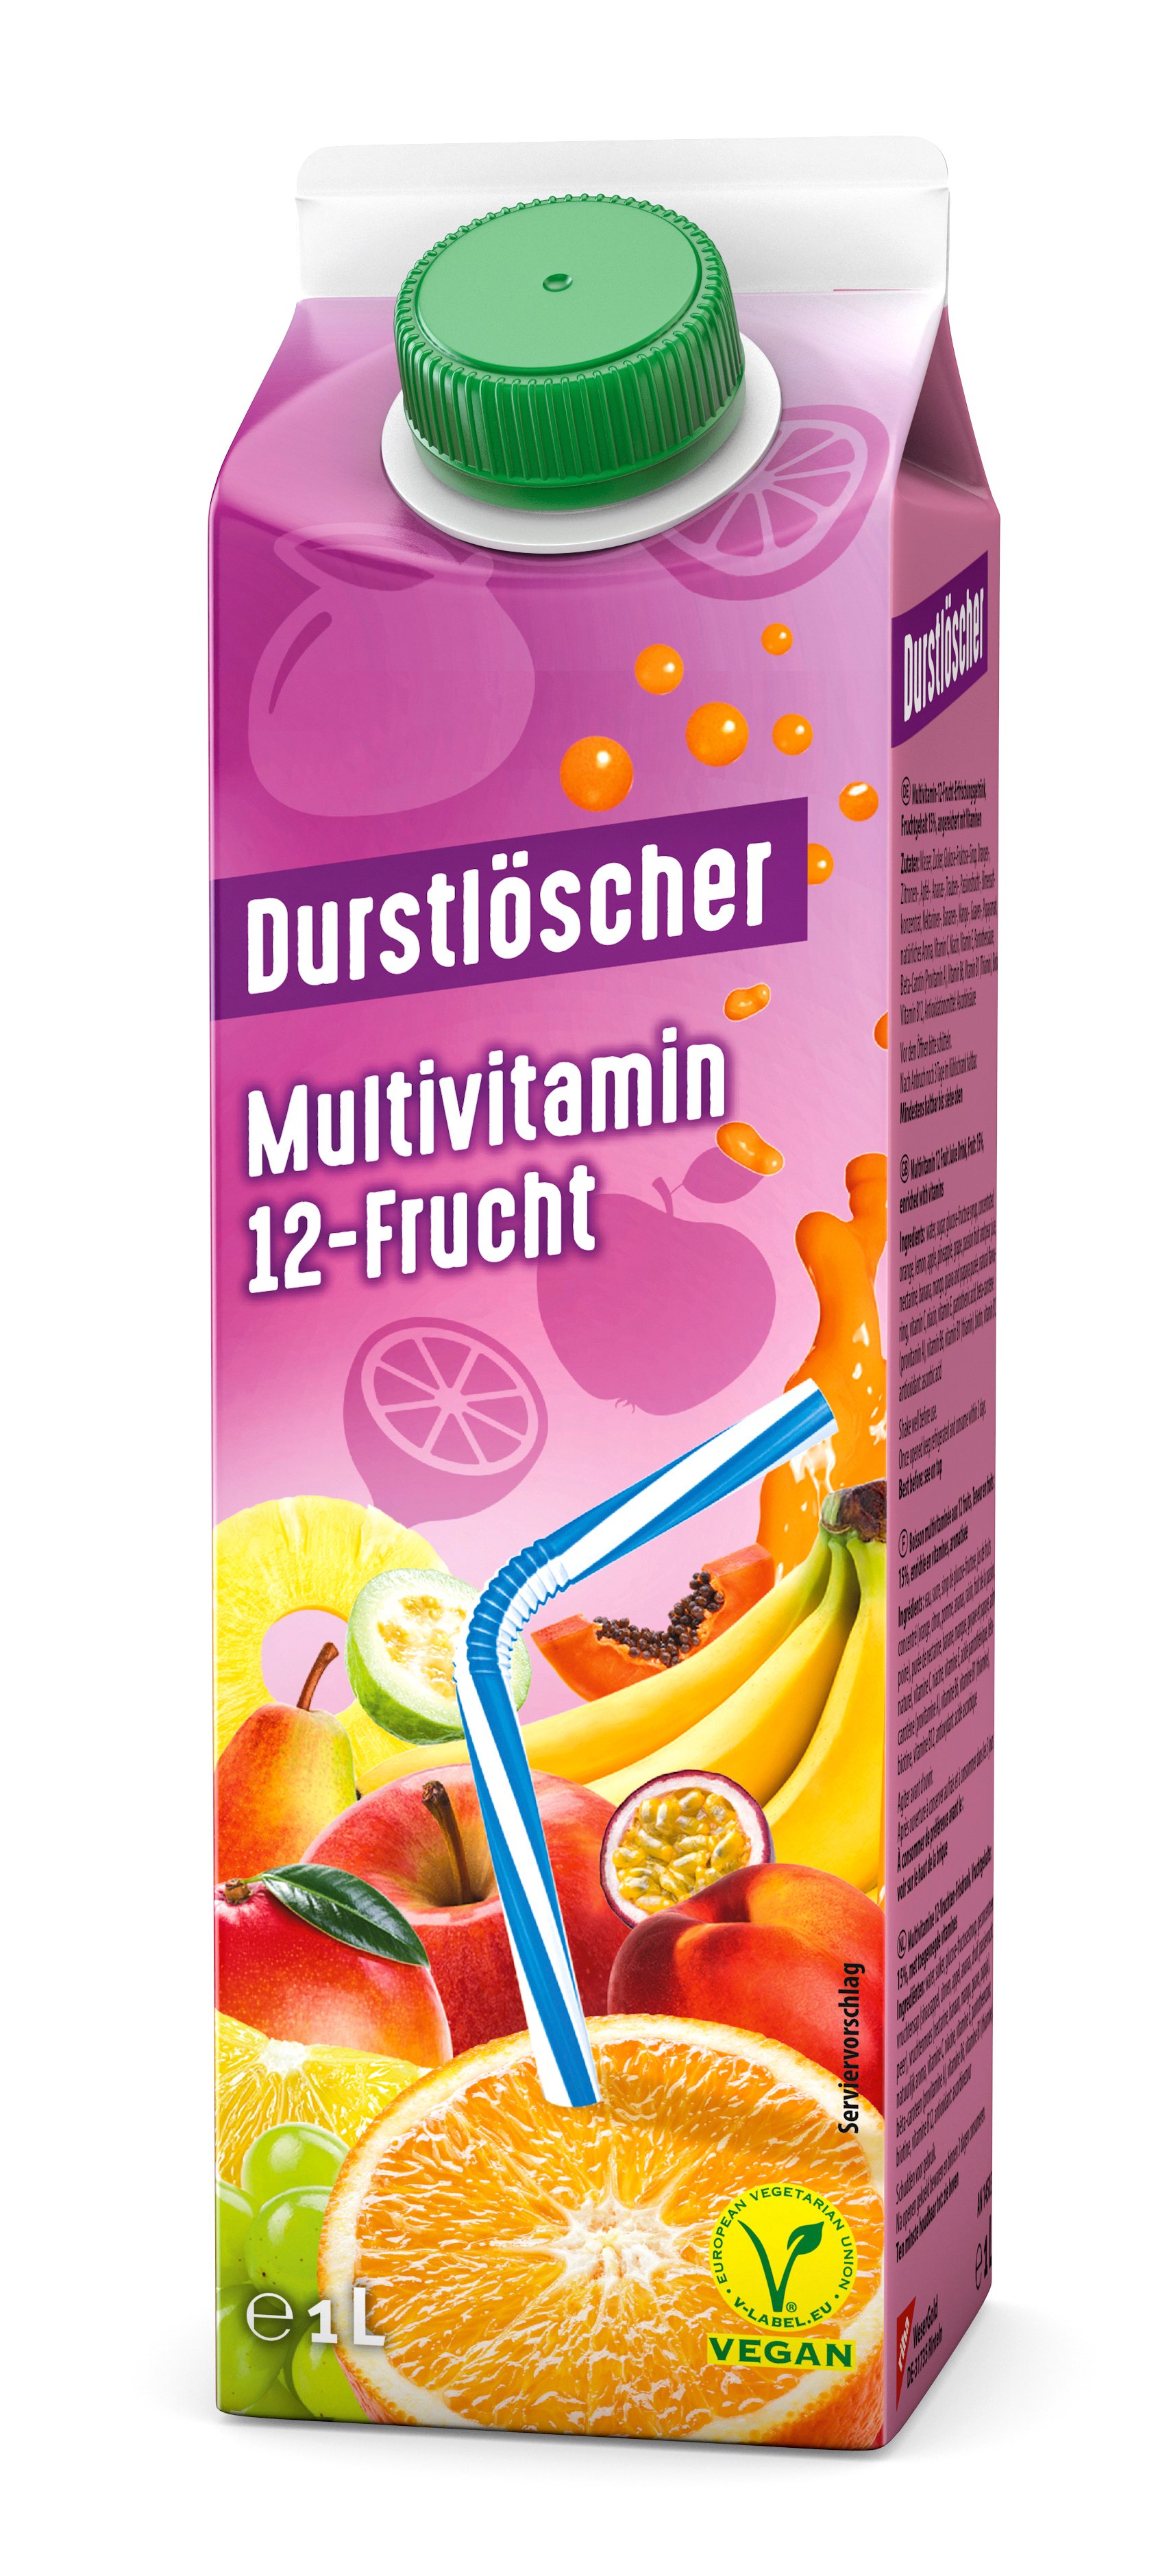 Durstlöscher "Multivitamin"